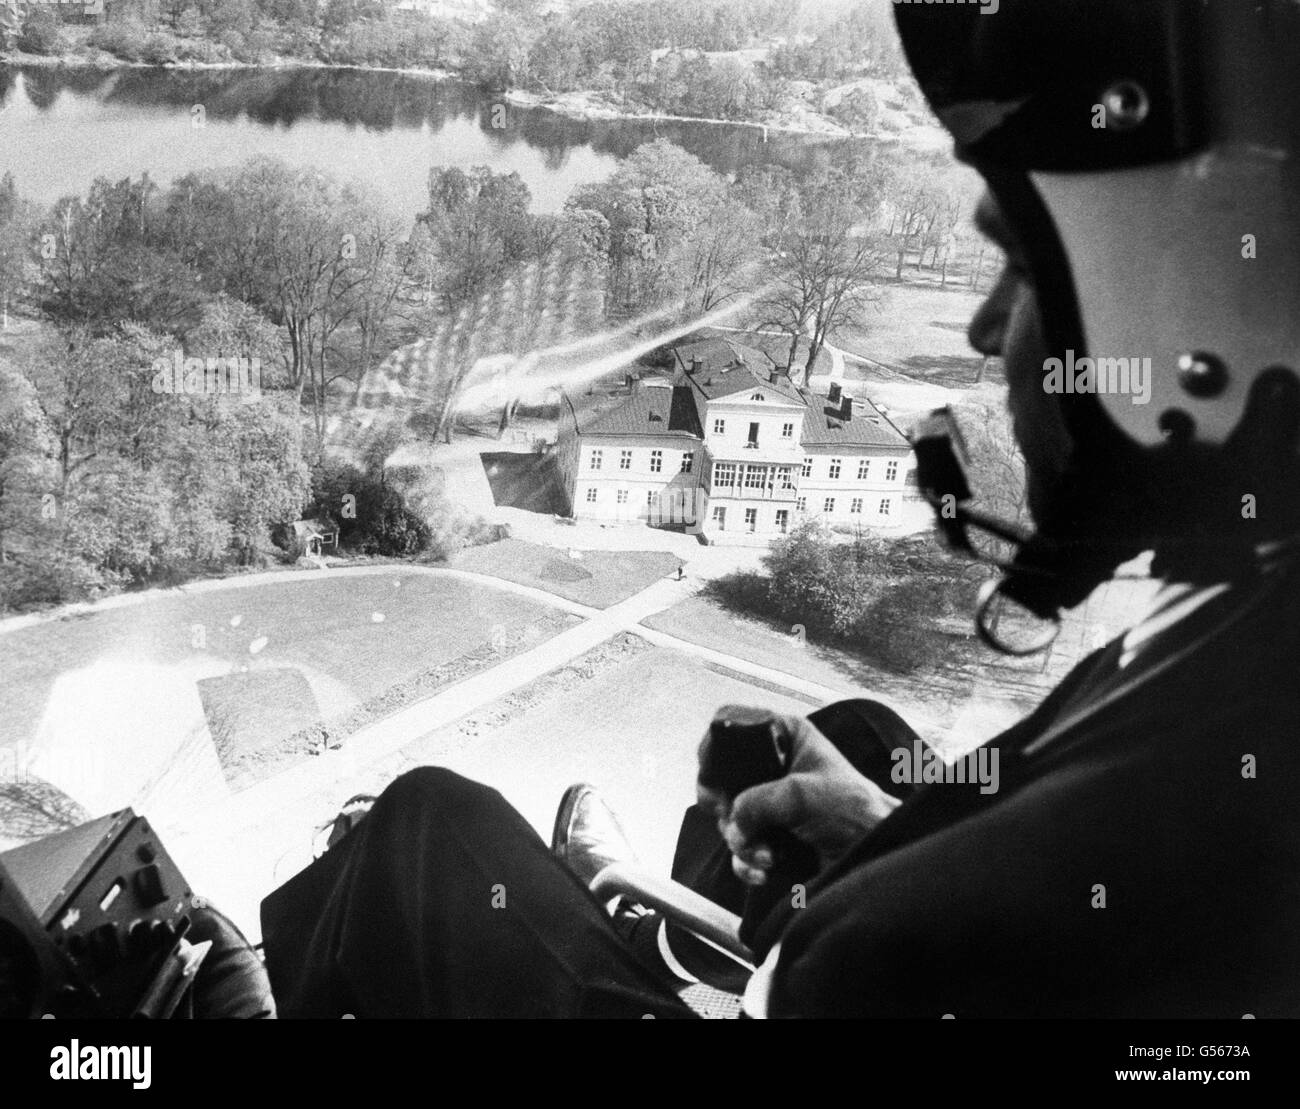 Ein Polizeihubschrauber schwebt über der Burg Haga, Schweden, in Vorbereitung auf den Besuch des sowjetischen Führers Nikita Chruschtschow. Er wird dort während seines offiziellen Besuches vom 22. Bis 27. Juni wohnen Stockfoto